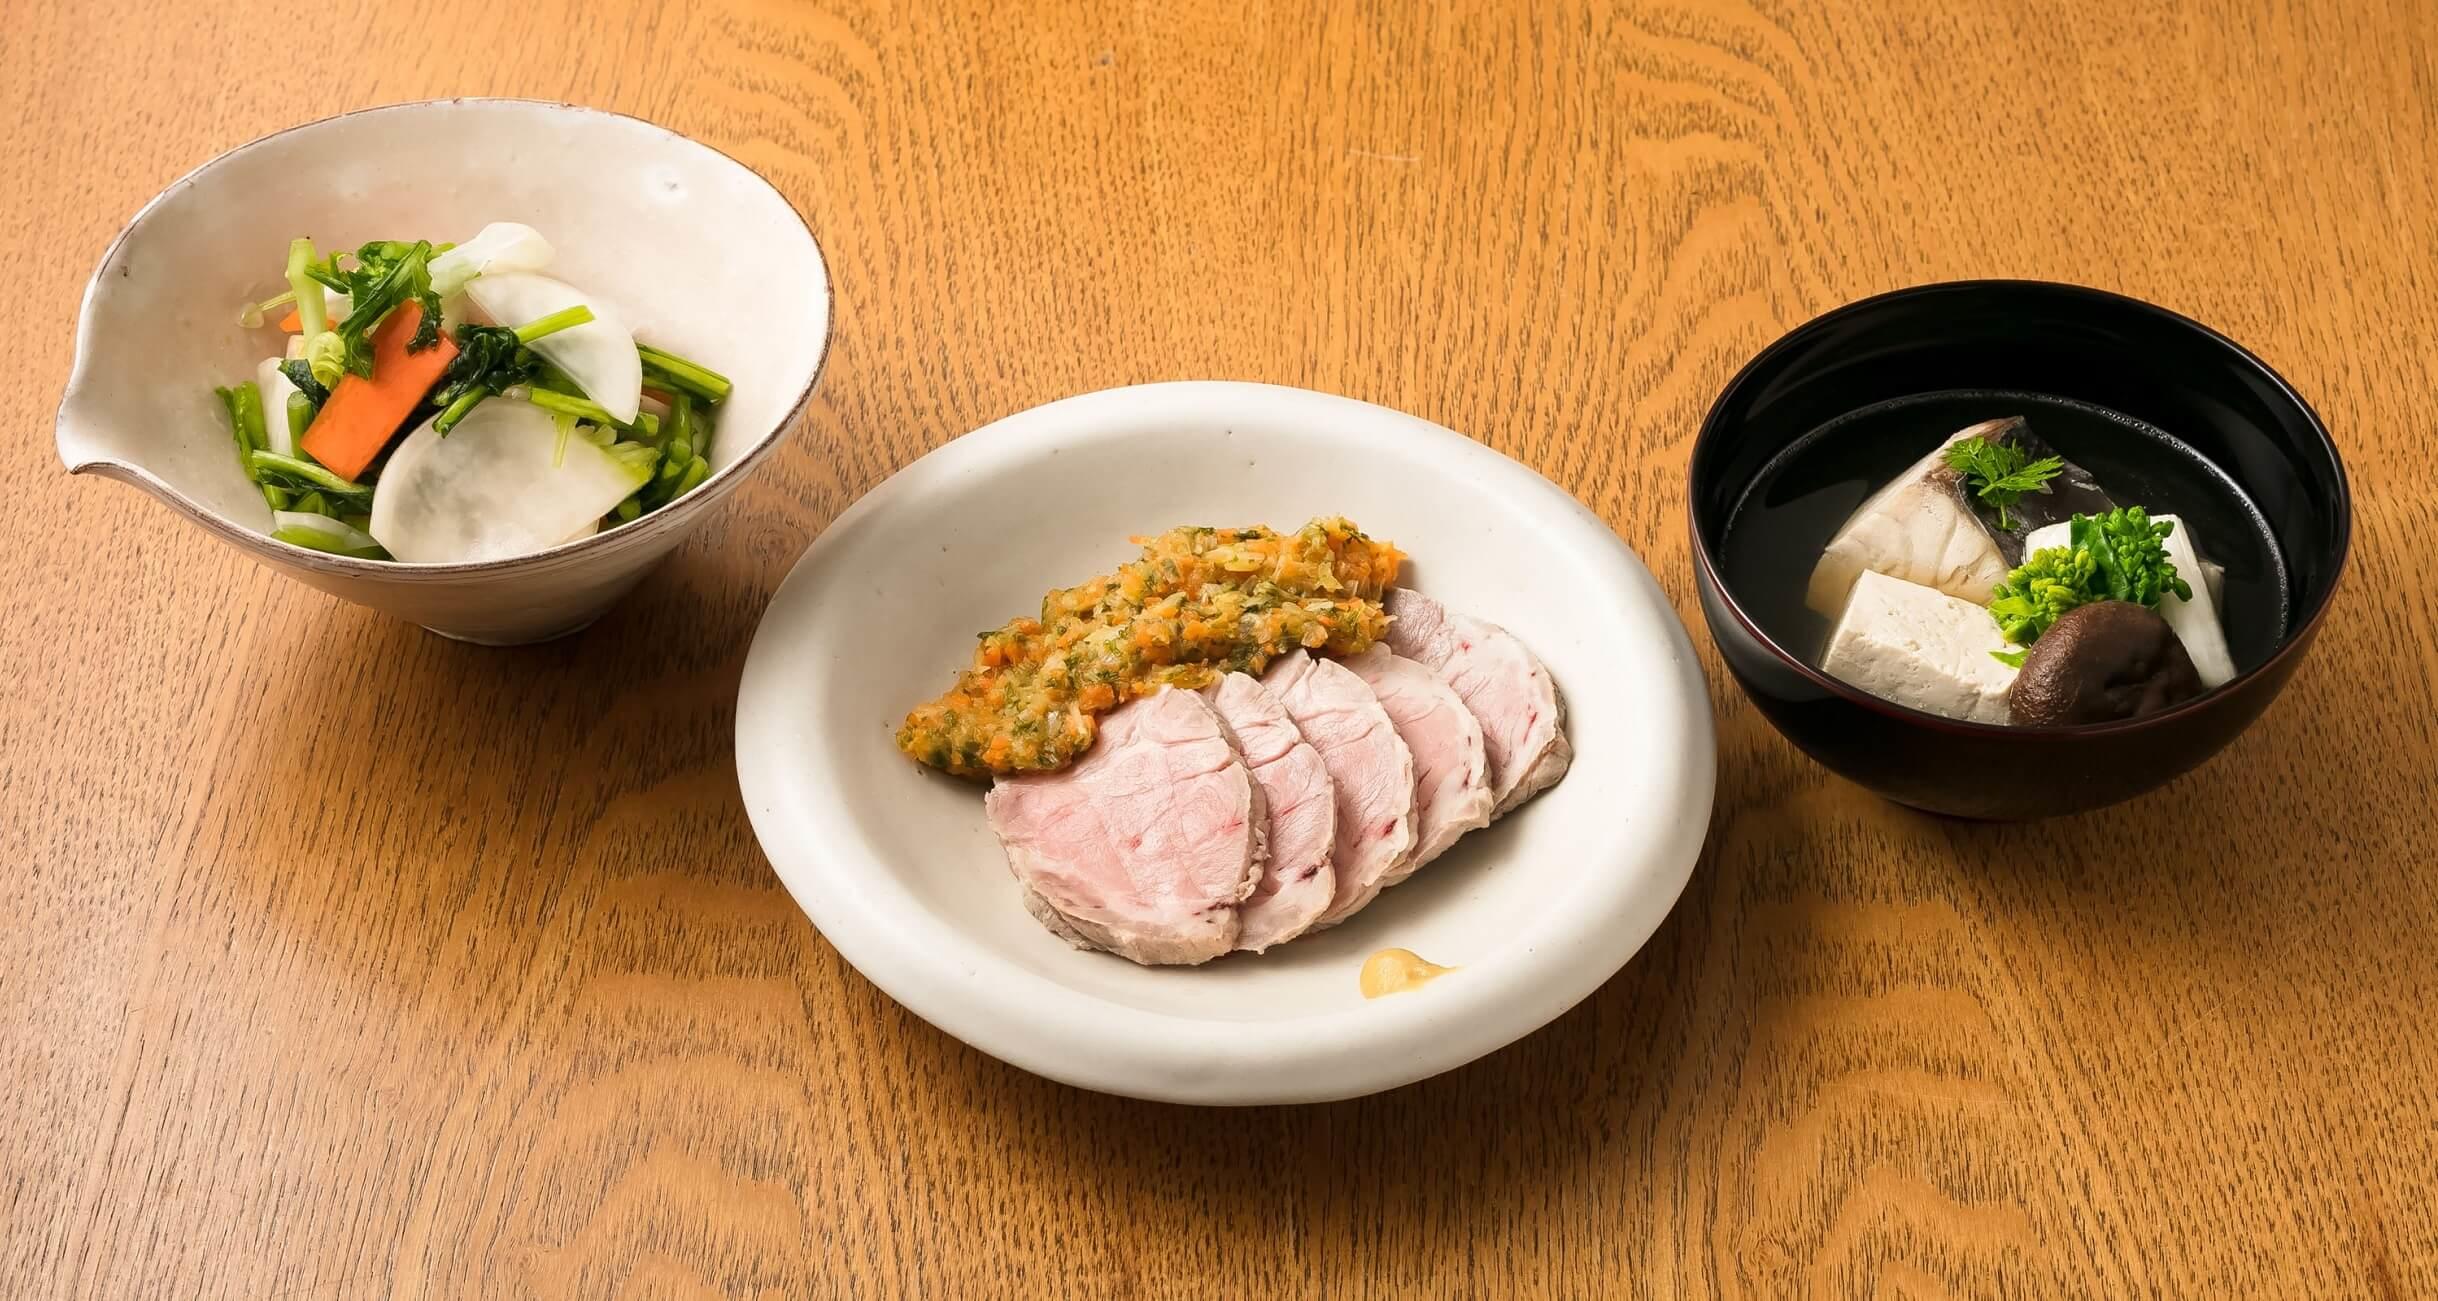 「分とく山」の野﨑洋光さんの料理。左から、かぶの浅漬け、塩ゆで豚、煮魚。